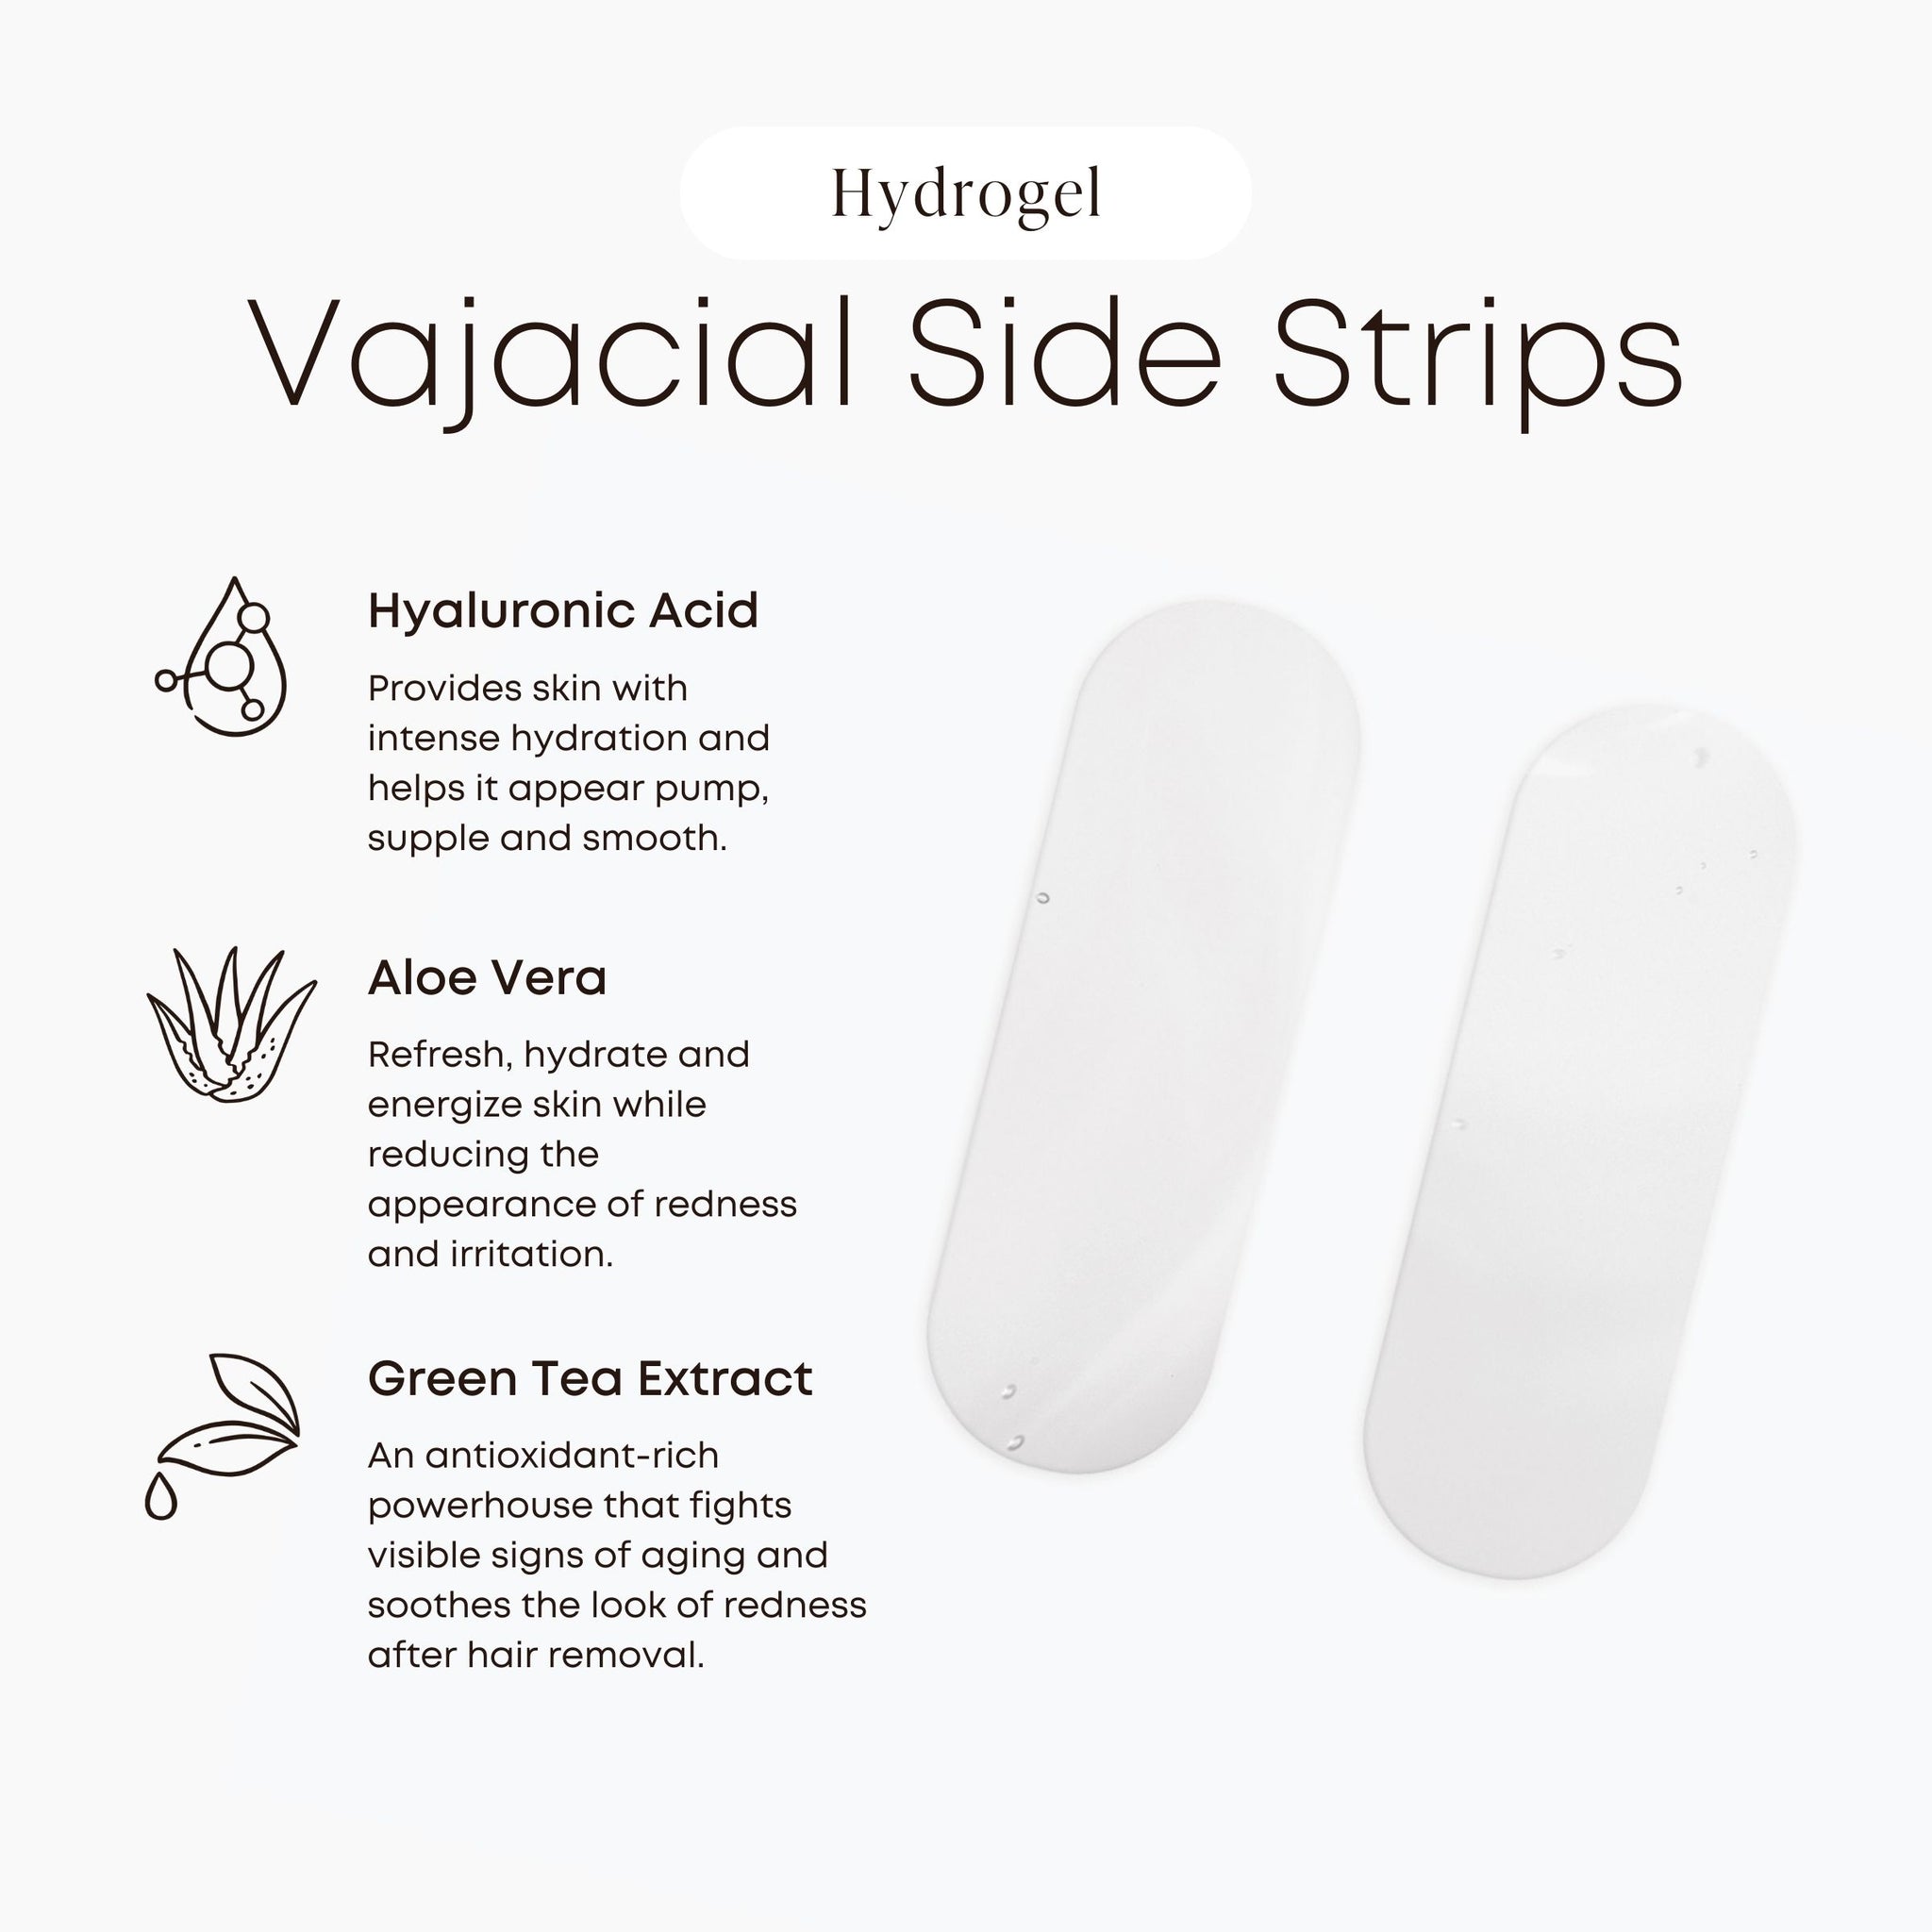 Hydrogel Vajacial Side Strips